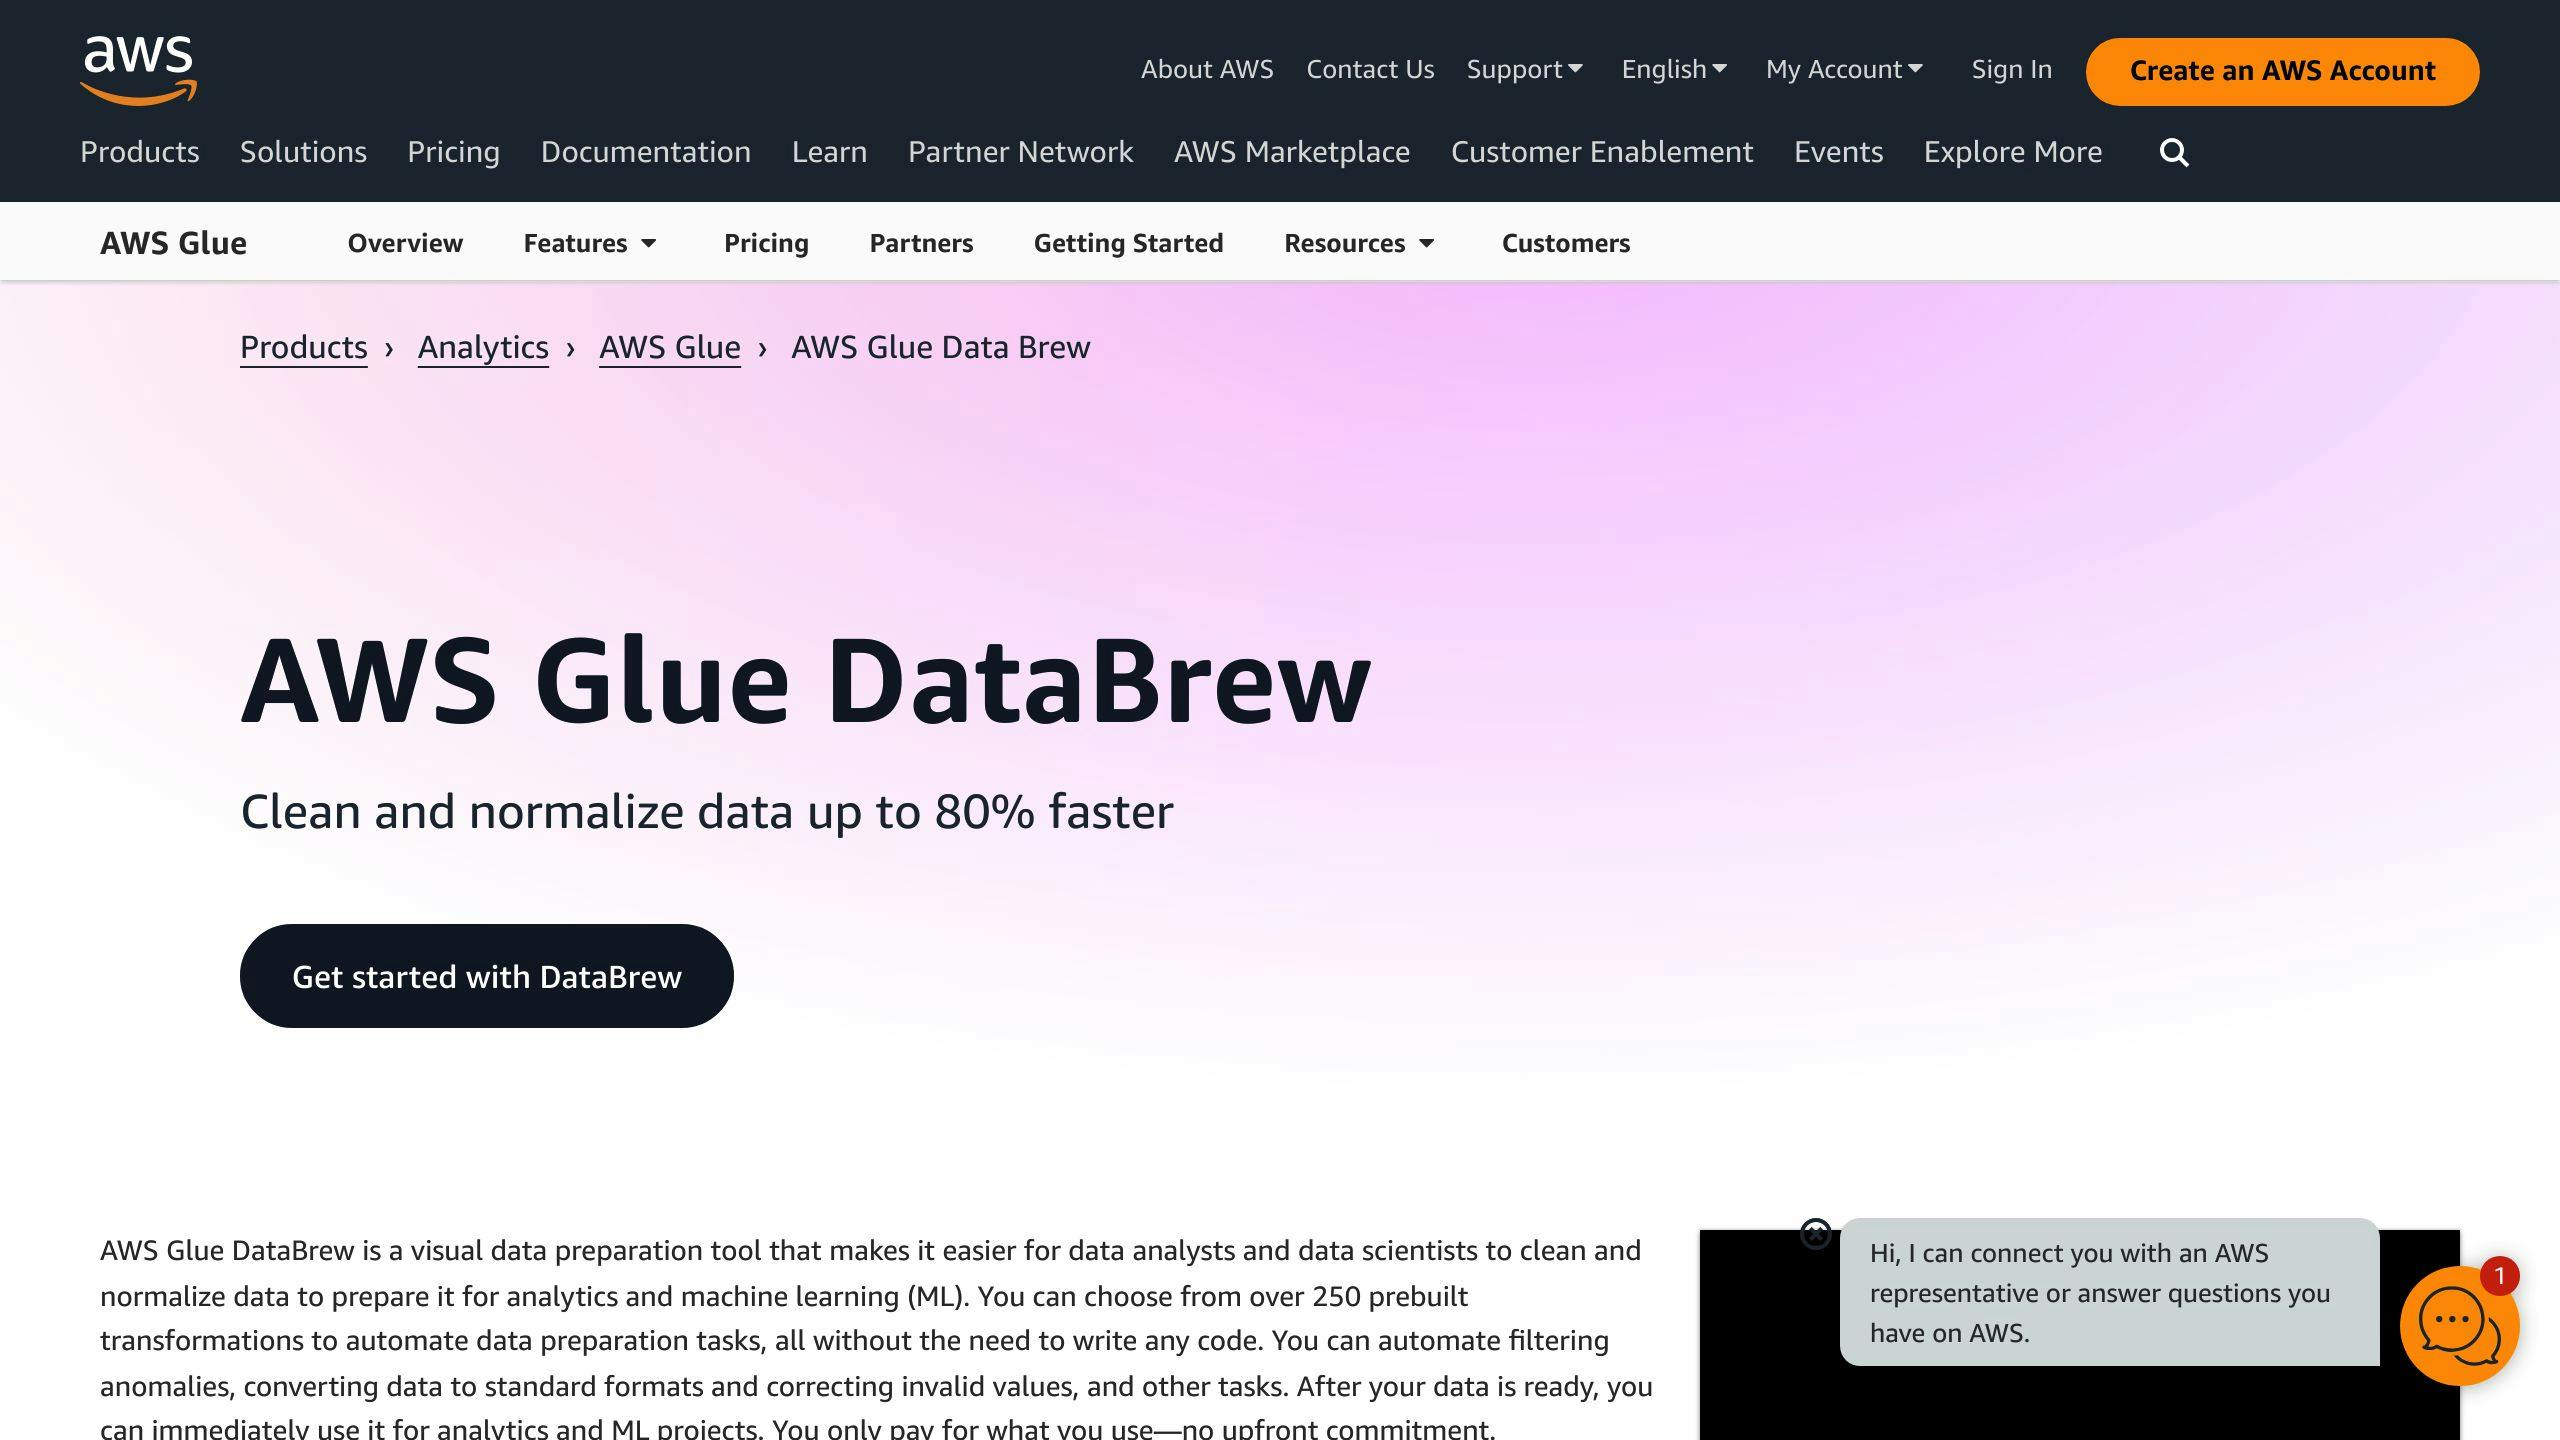 AWS Glue DataBrew